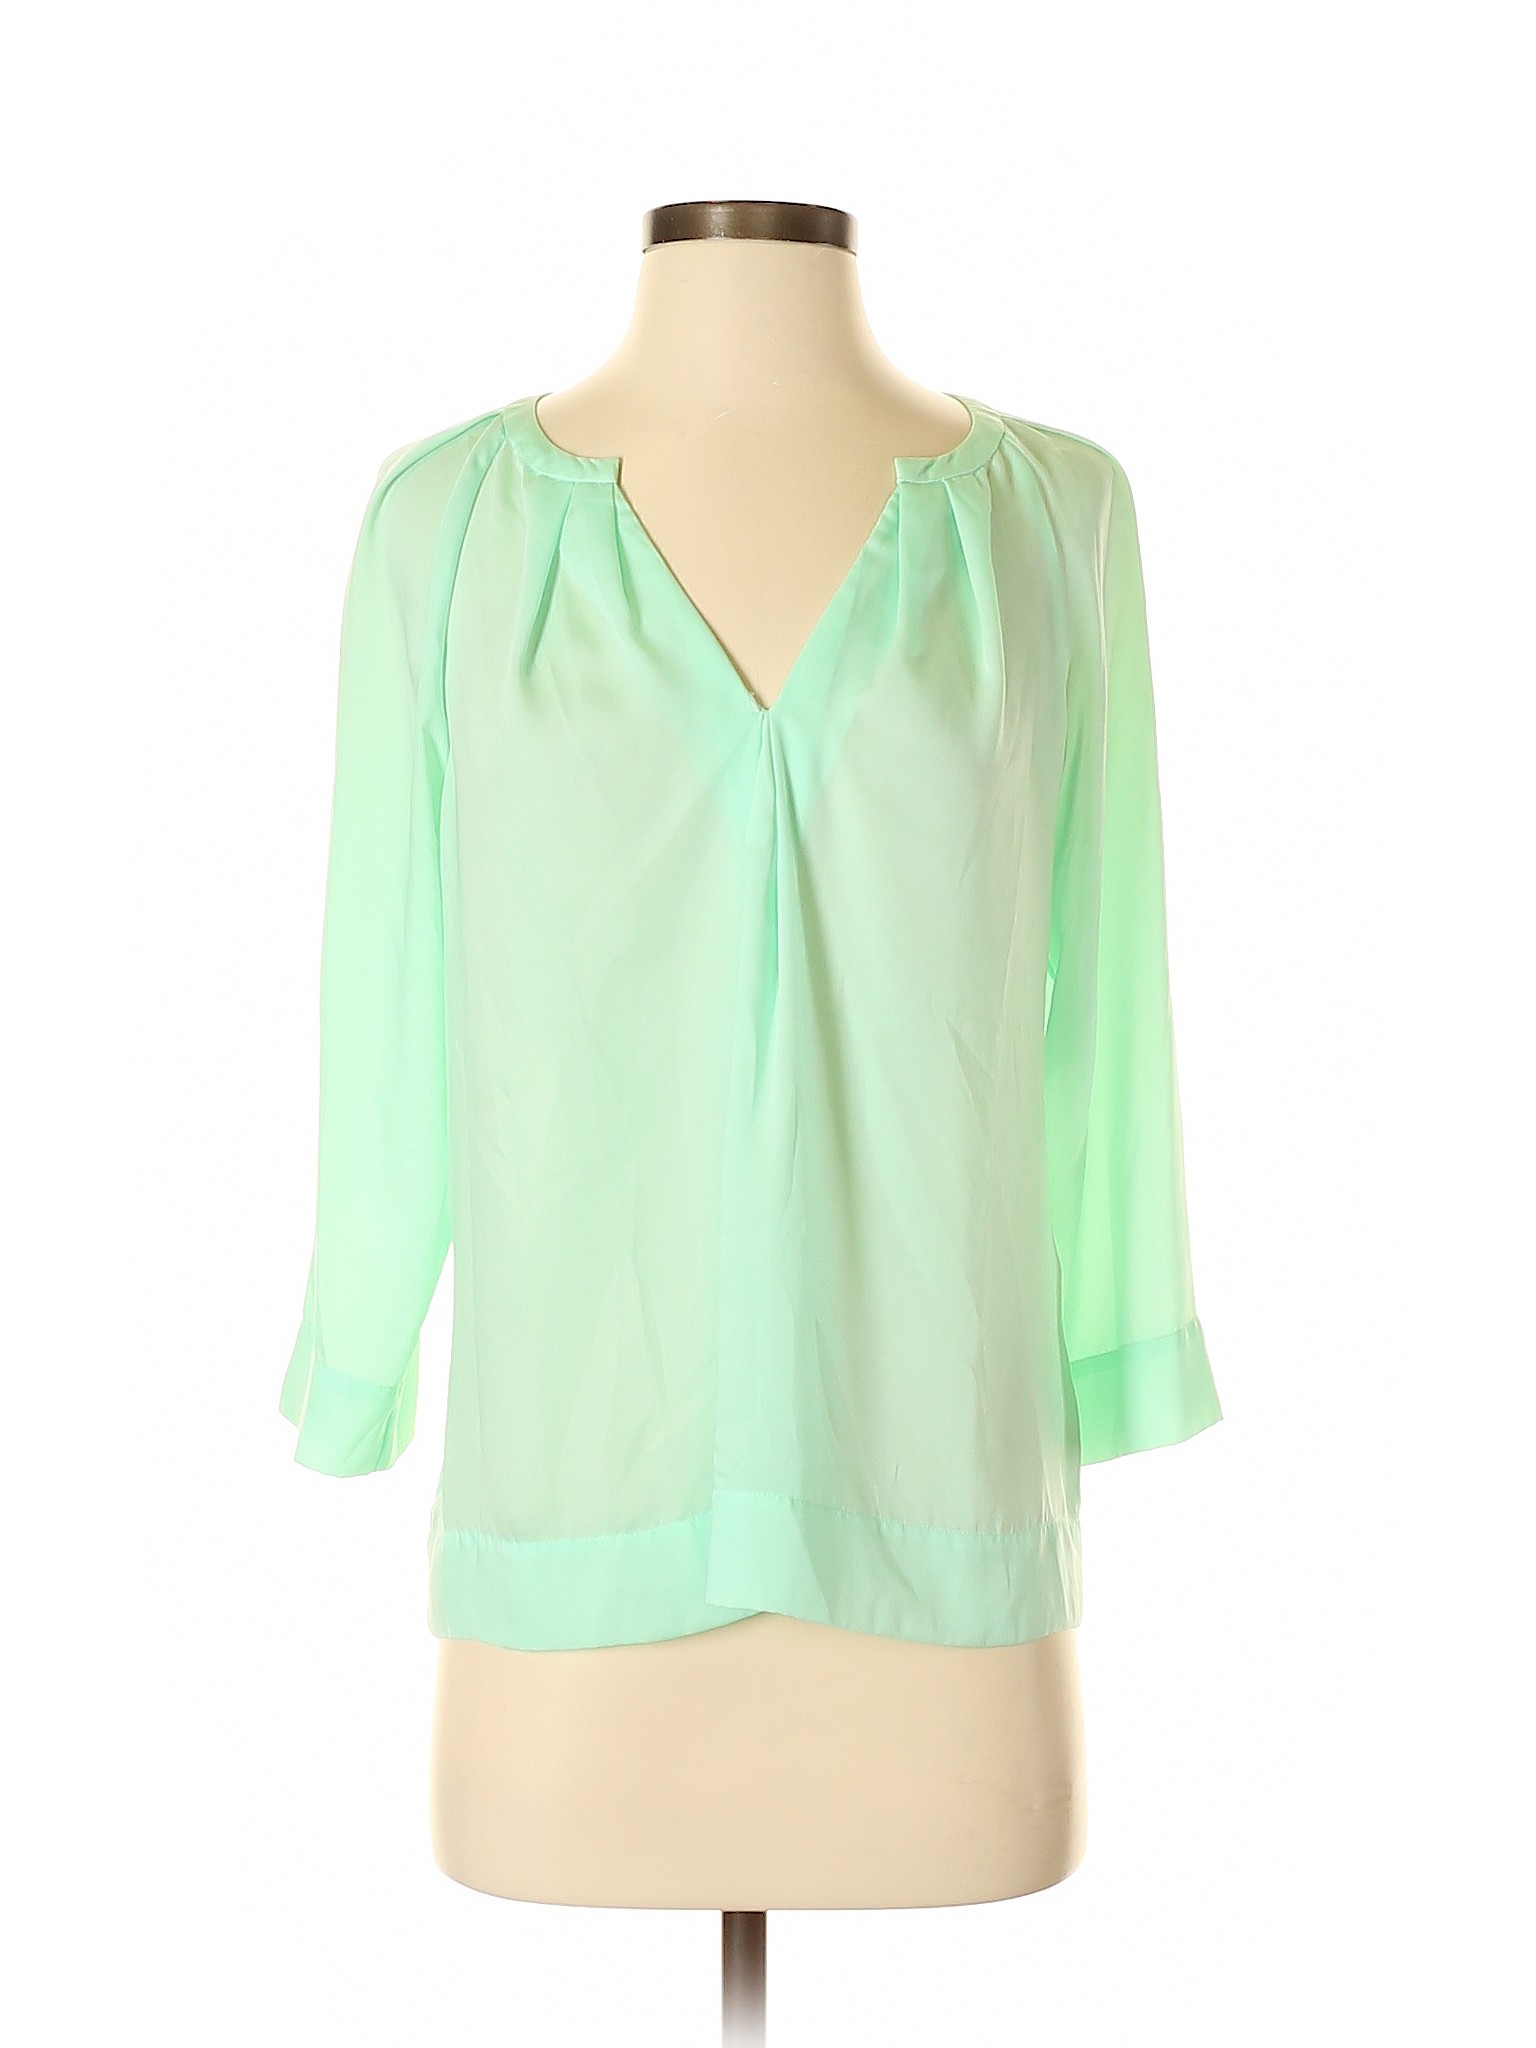 DKNYC Women Green Long Sleeve Blouse S | eBay